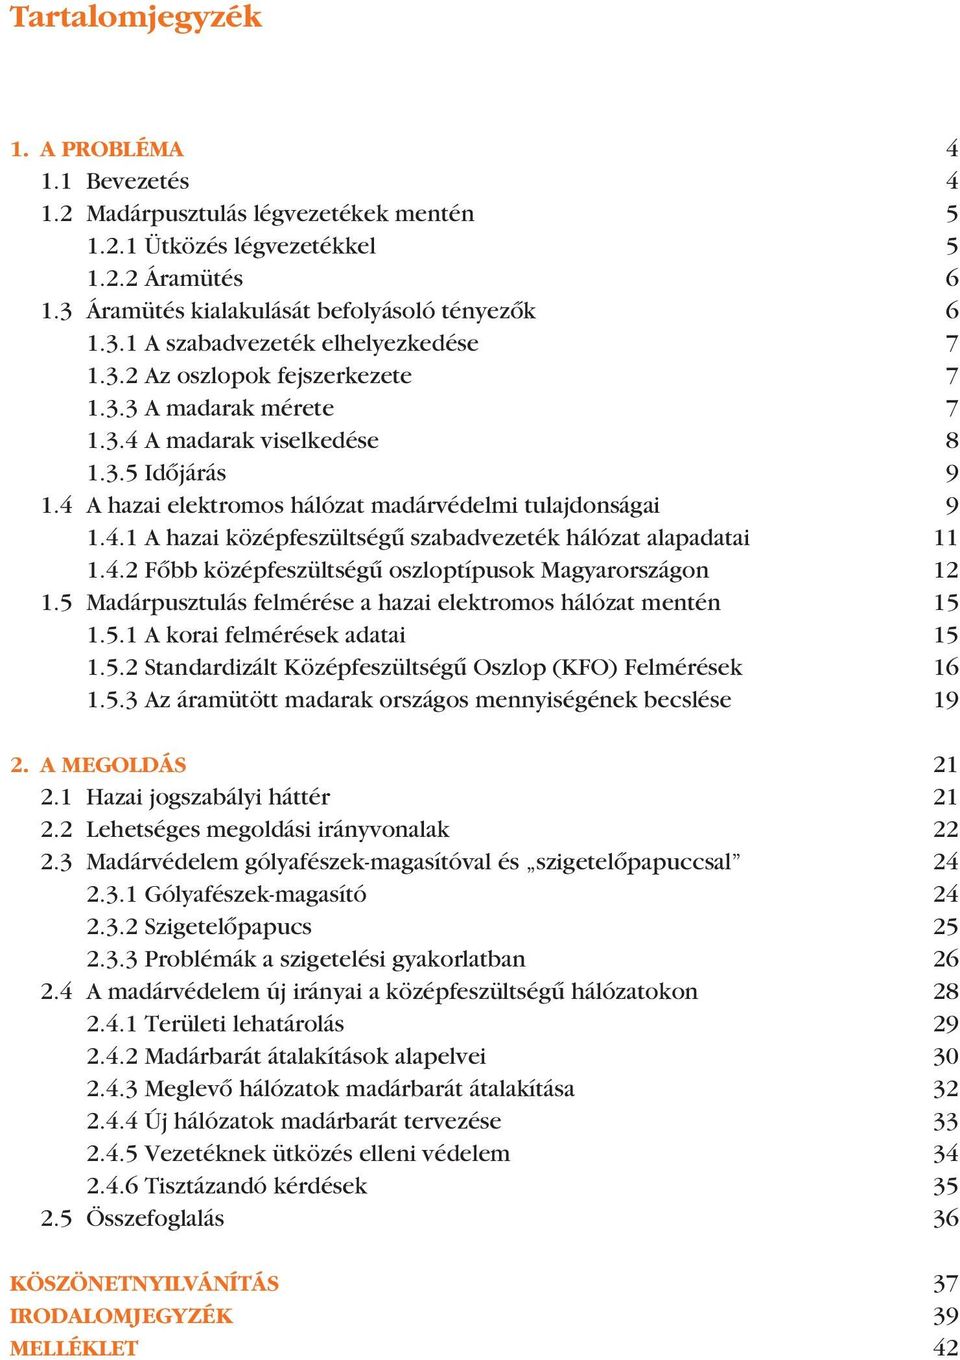 4.2 Fôbb középfeszültségû oszloptípusok Magyarországon 12 1.5 Madárpusztulás felmérése a hazai elektromos hálózat mentén 15 1.5.1 A korai felmérések adatai 15 1.5.2 Standardizált Középfeszültségû Oszlop (KFO) Felmérések 16 1.